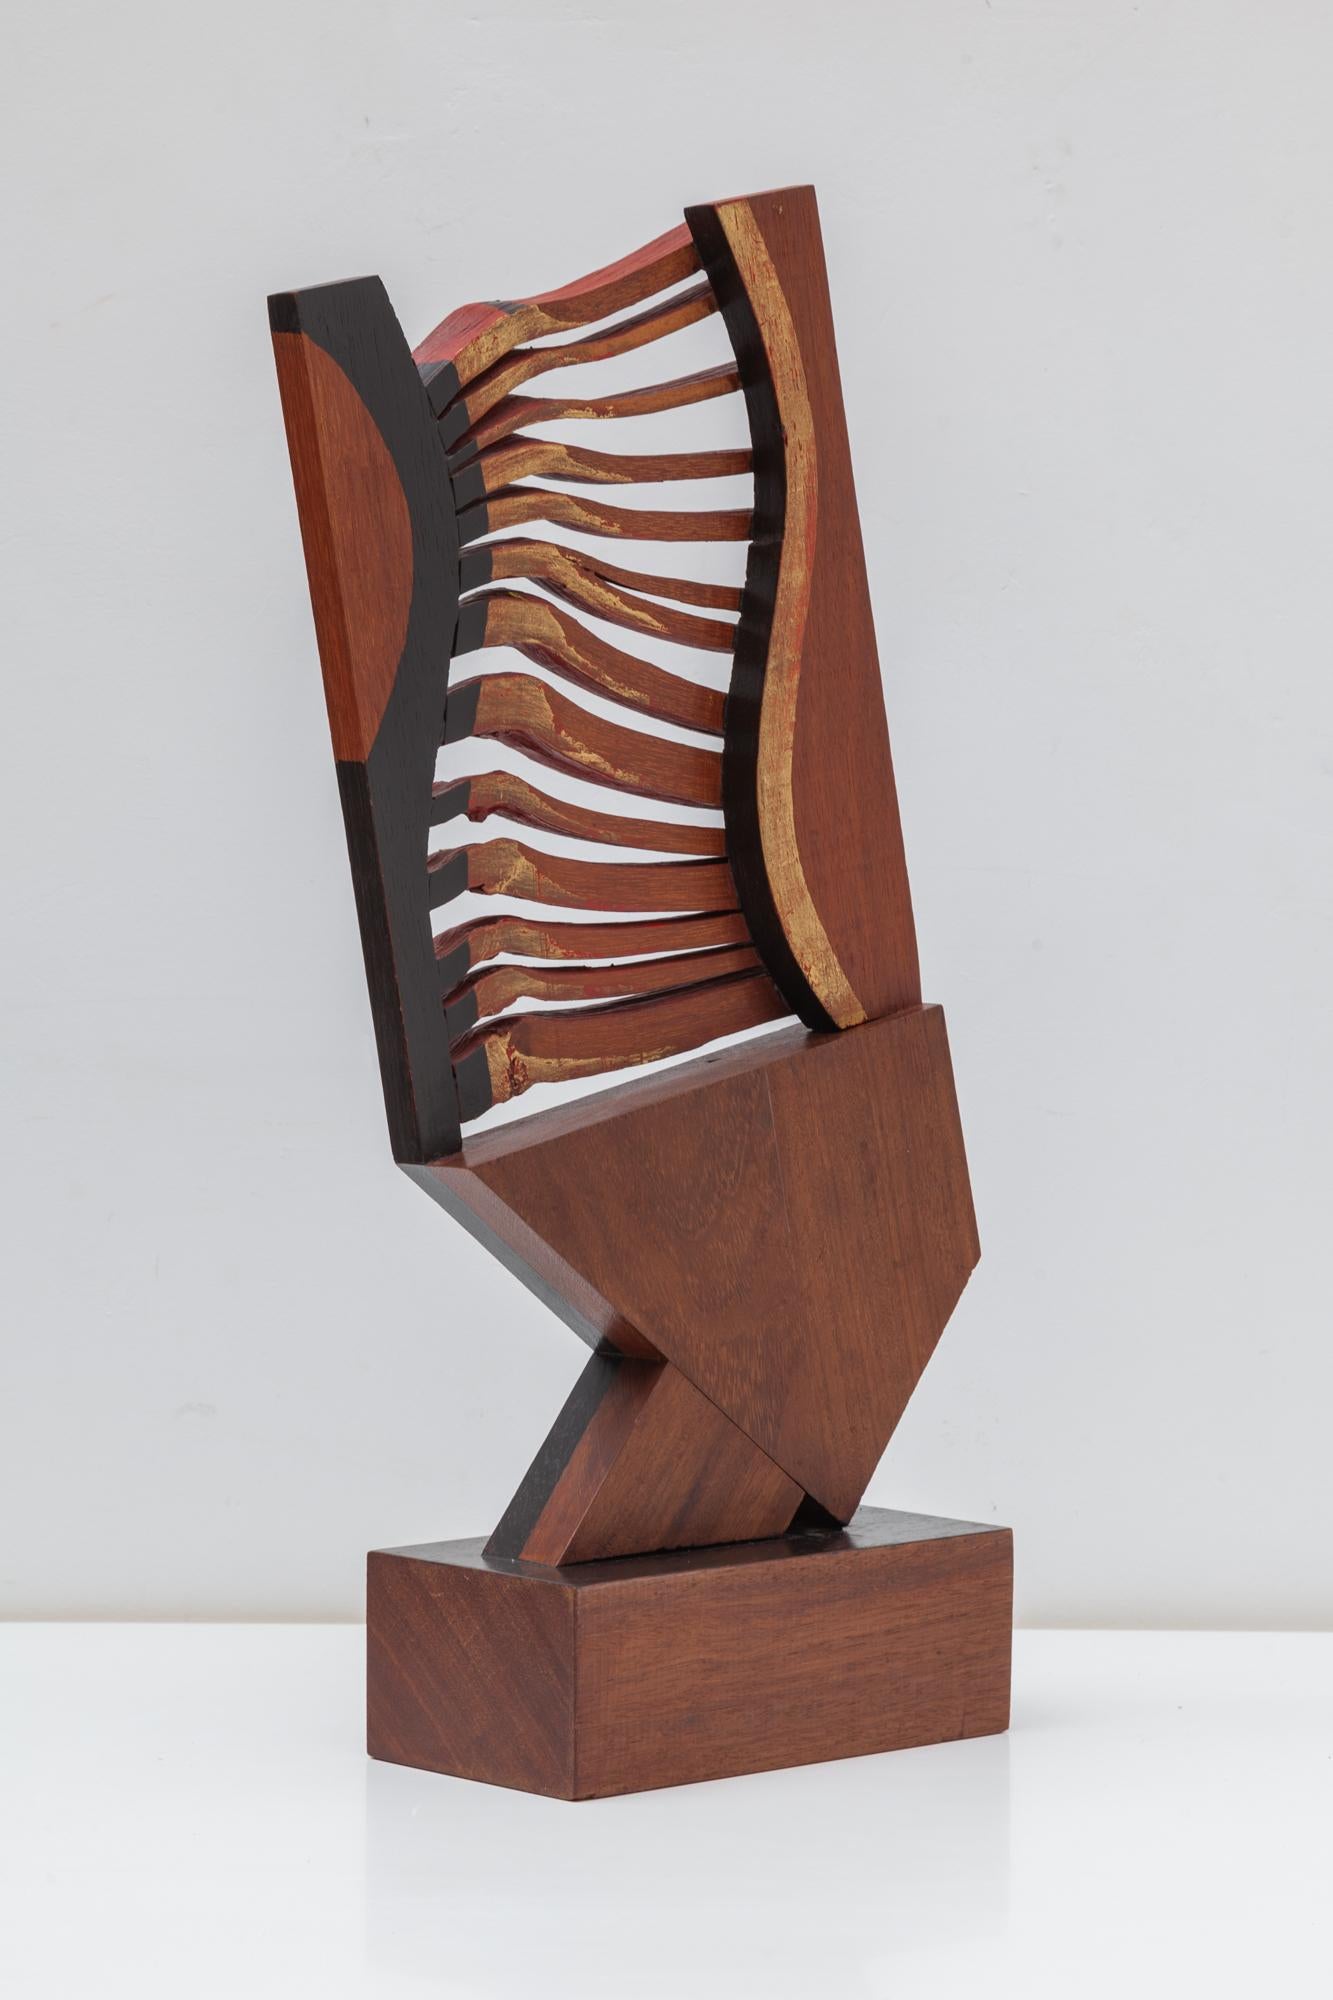 Hand-Crafted Fisch Sculpture by the Artist Jhan Paulussen, Belgium, 1960s